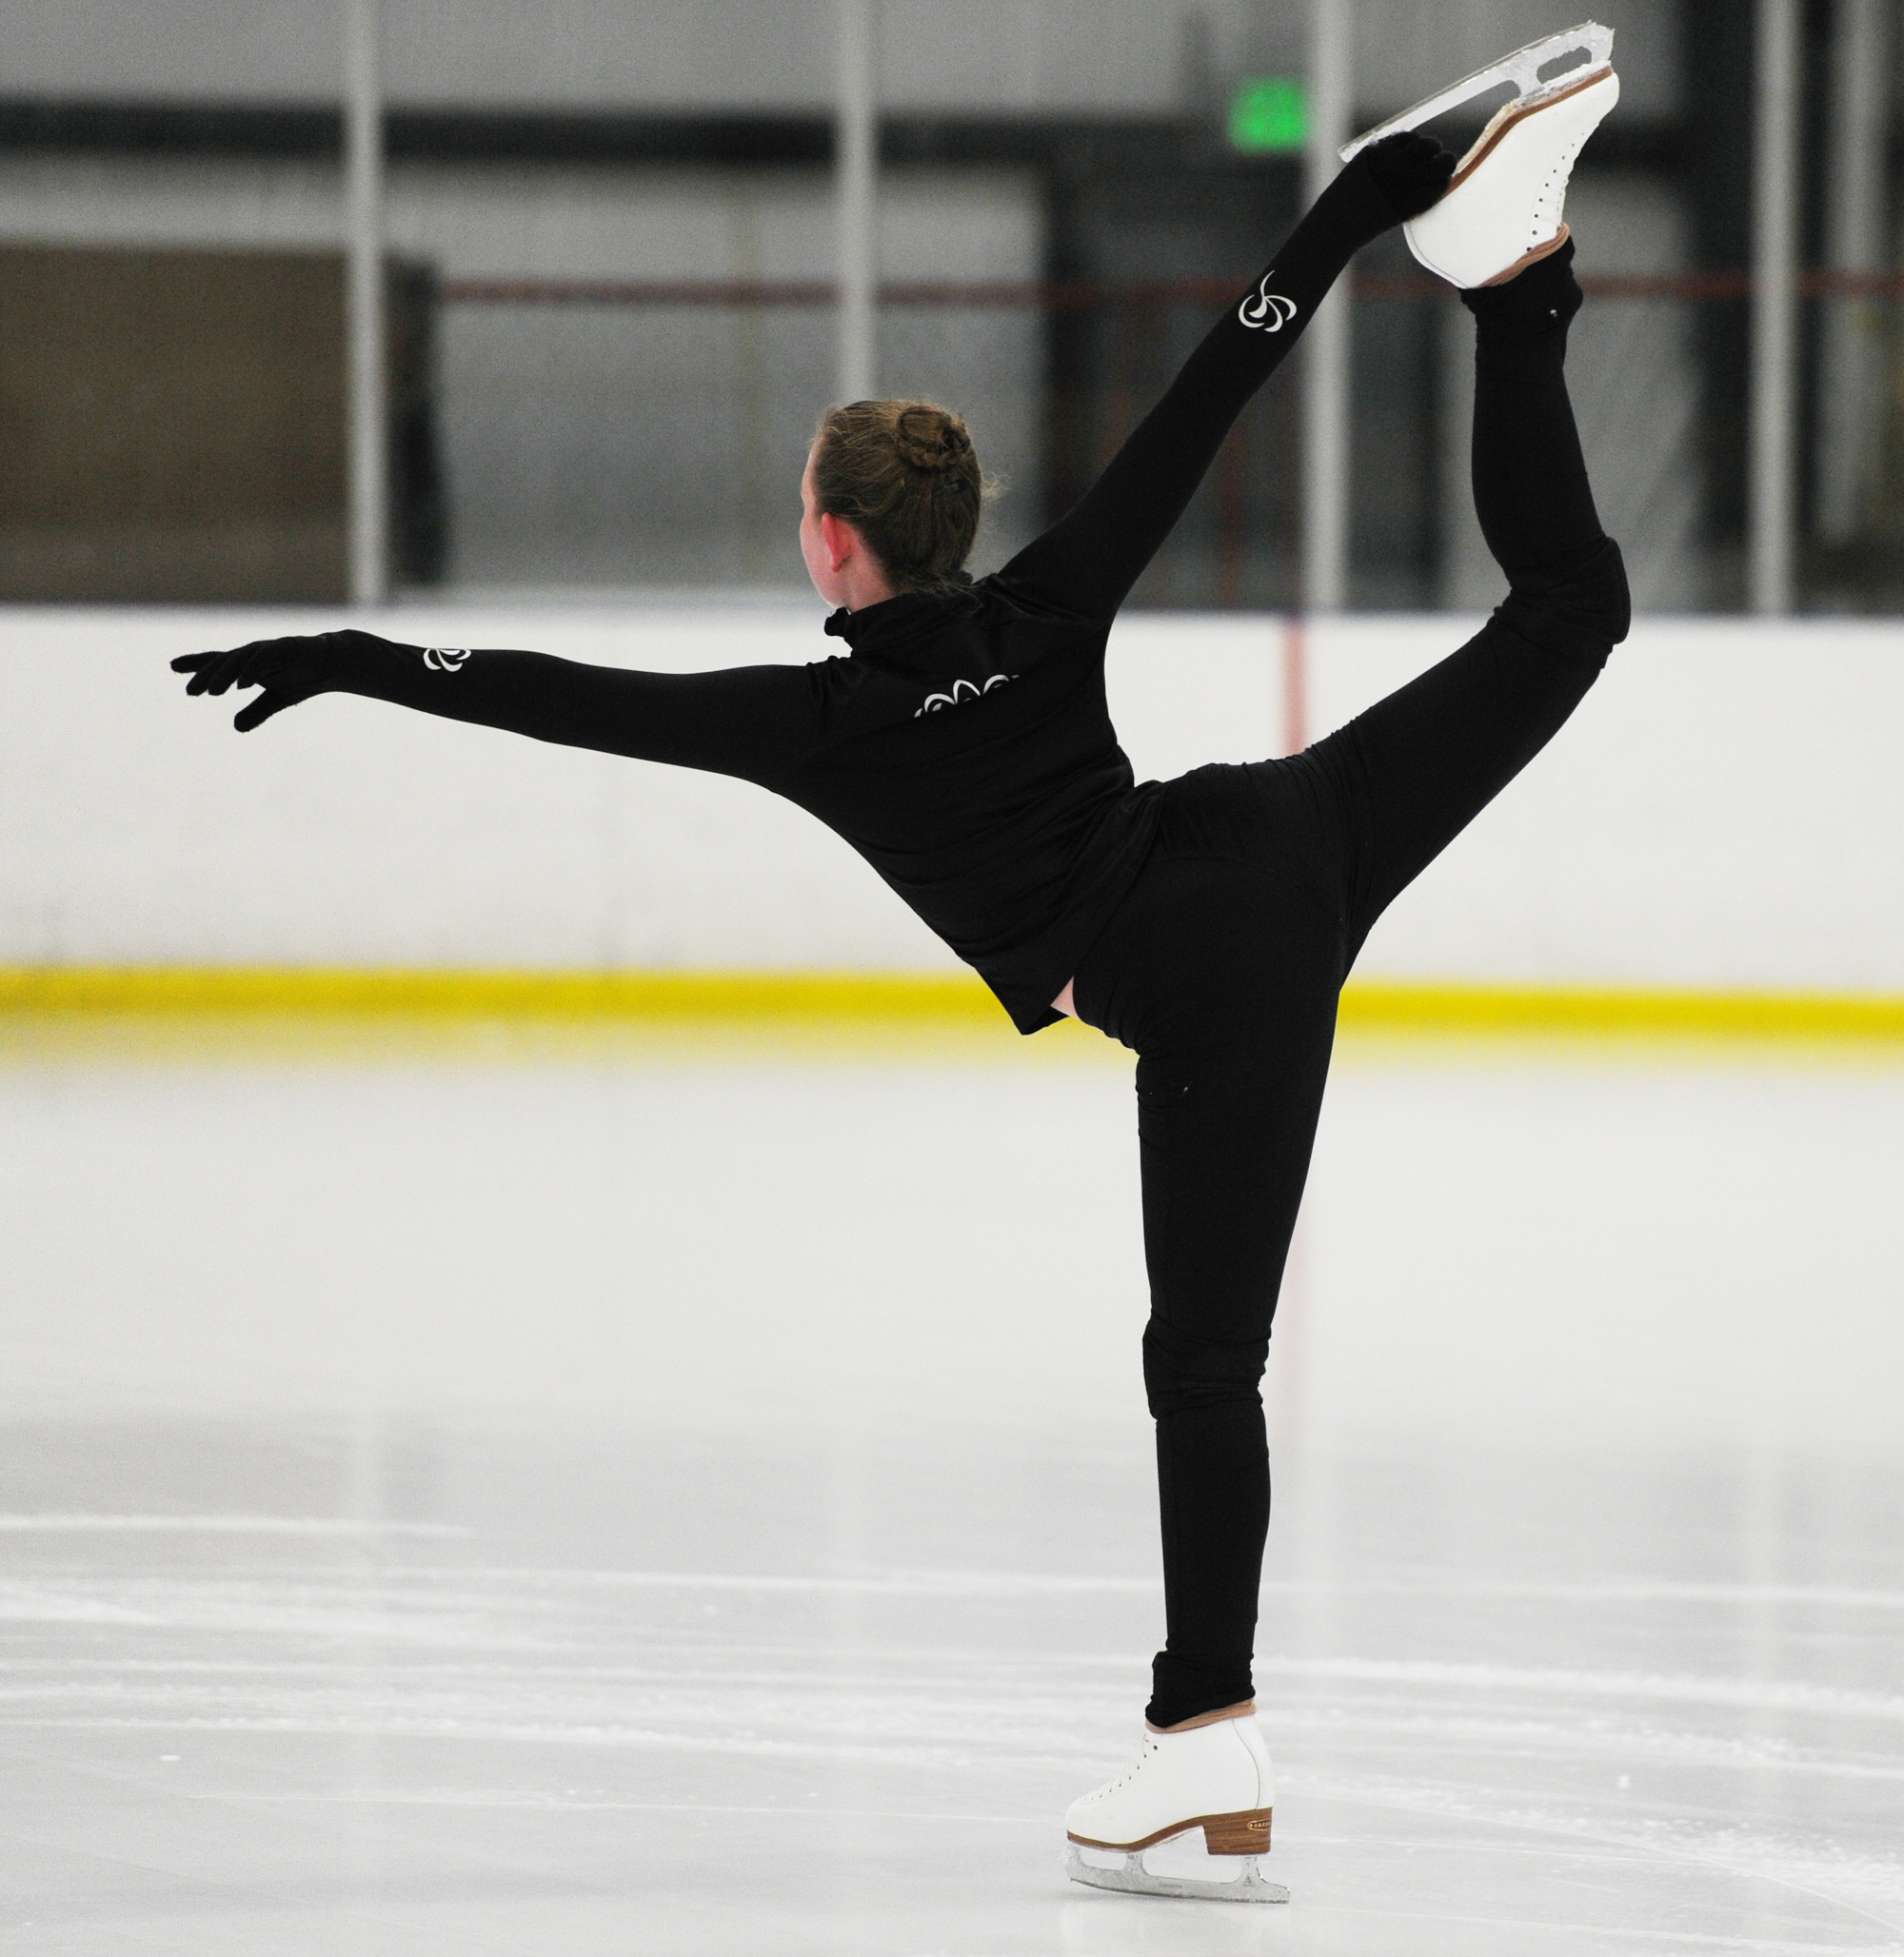 figura de fondo de pantalla,figura de skate,deportes,patinaje sobre hielo,patinaje artístico,baile sobre hielo